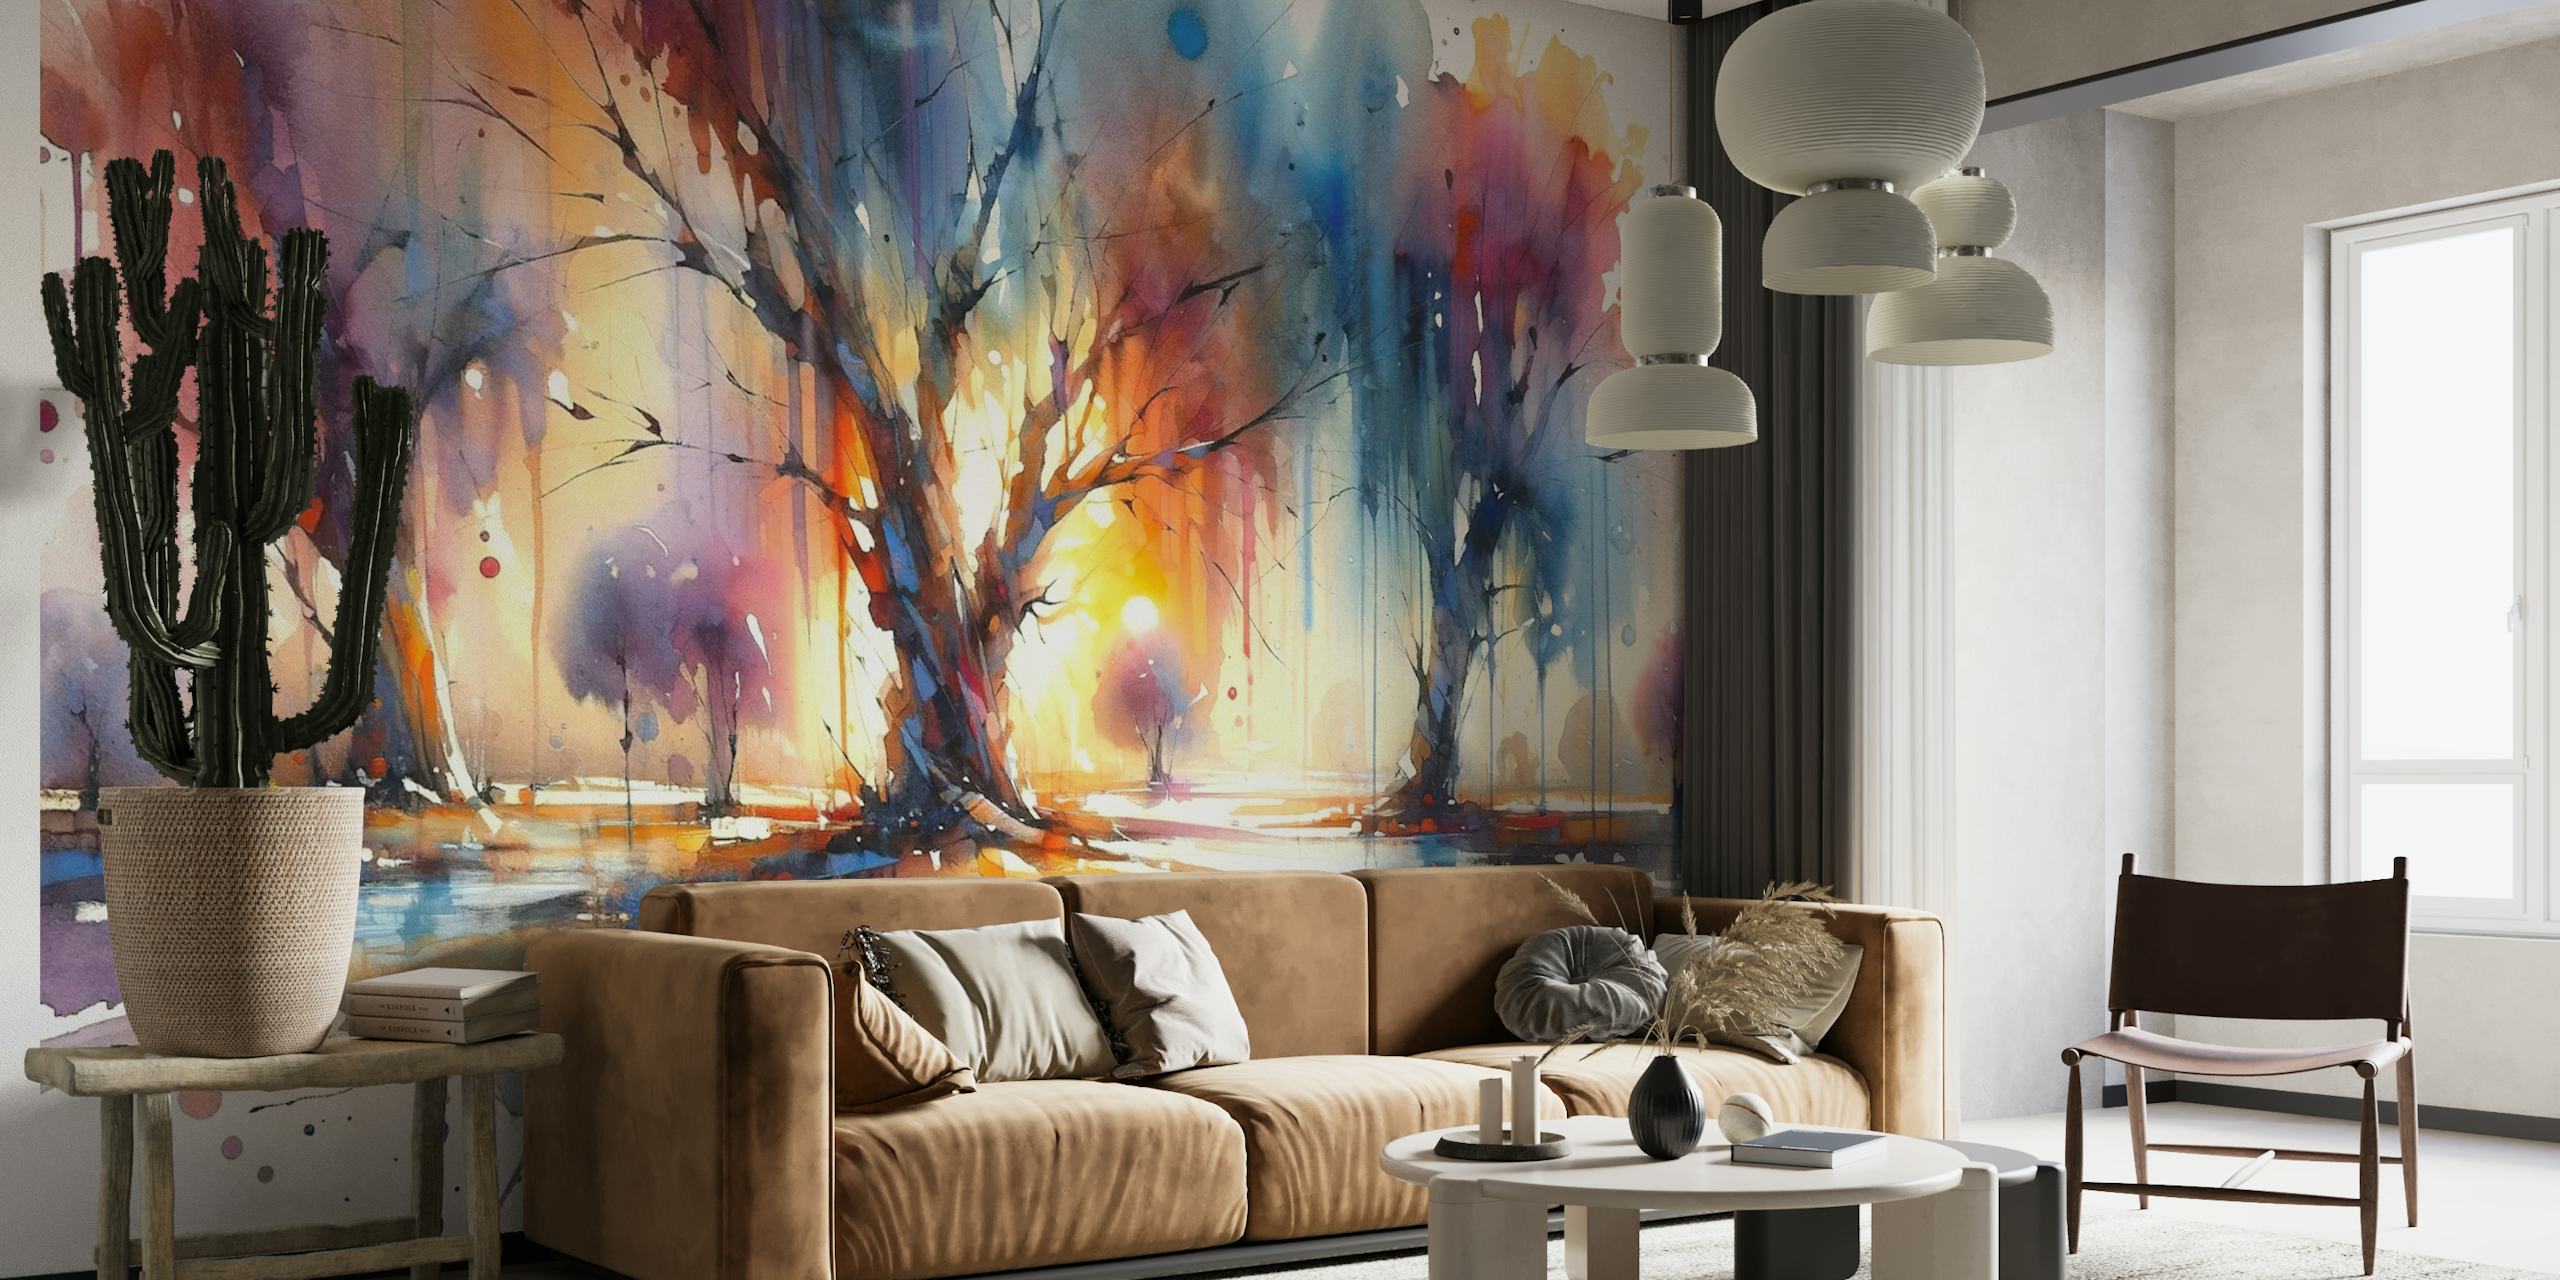 Abstrakt akvarellveggmaleri av fargerike trær med et spekter av livlige fargetoner.